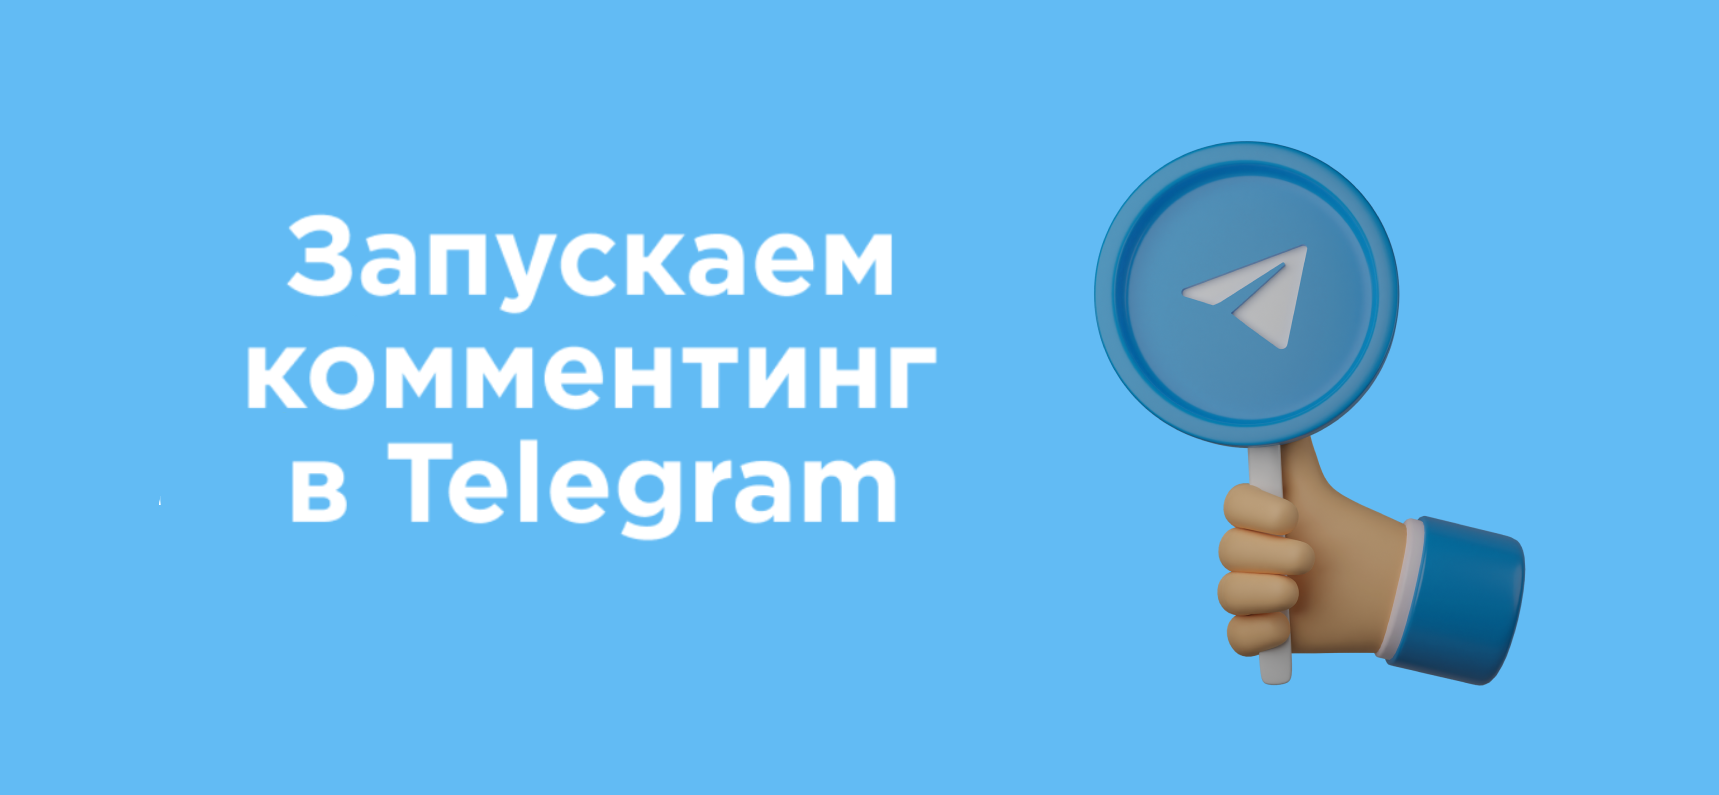 Комментинг: новая услуга Rookee для нативного продвижения в Telegram